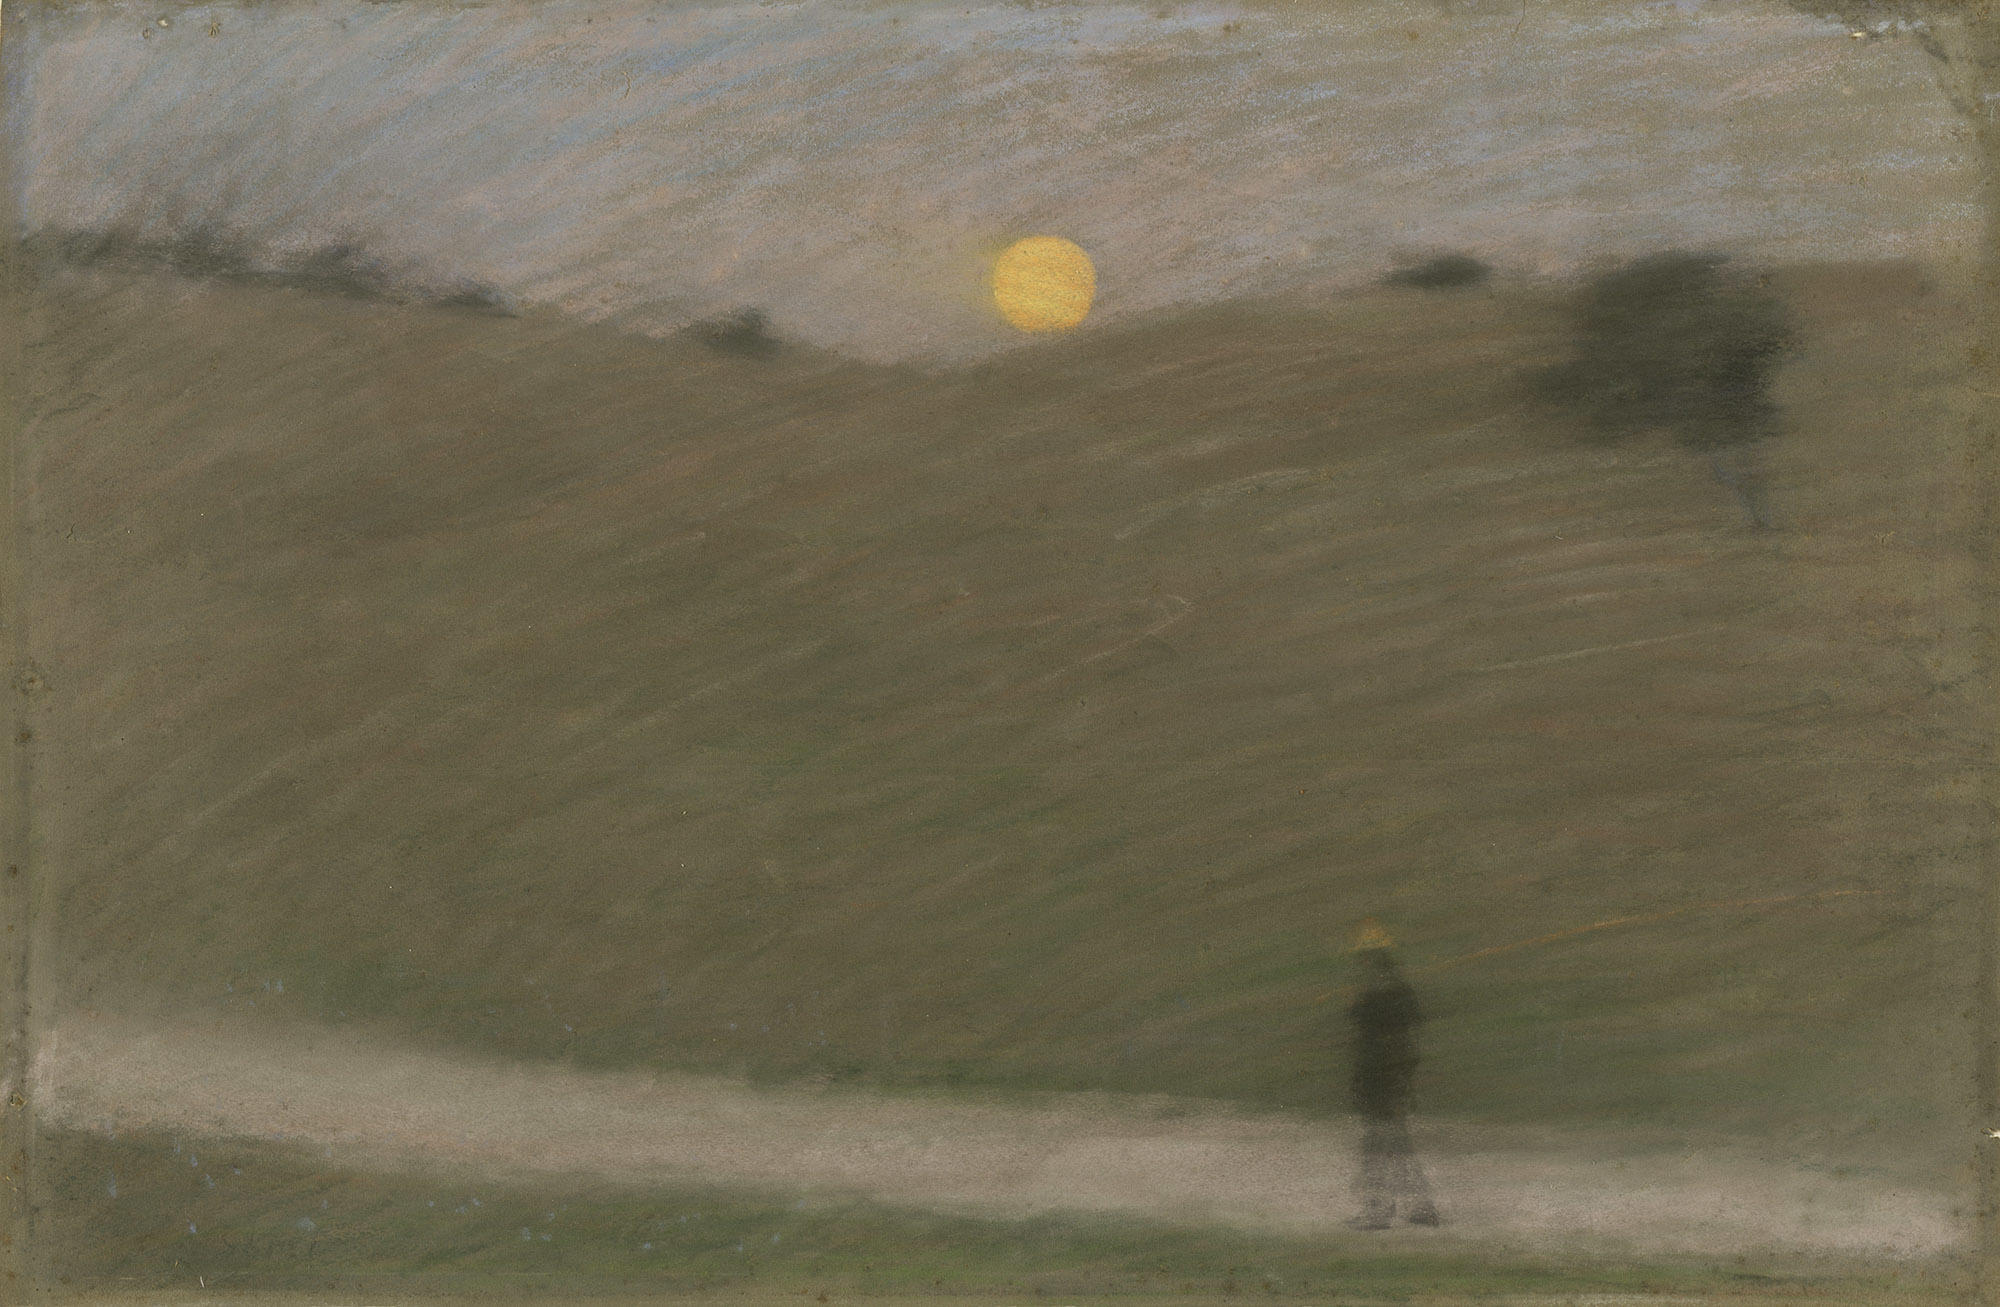  Dennis Miller Bunker painting titled "Moonrise", 1884 